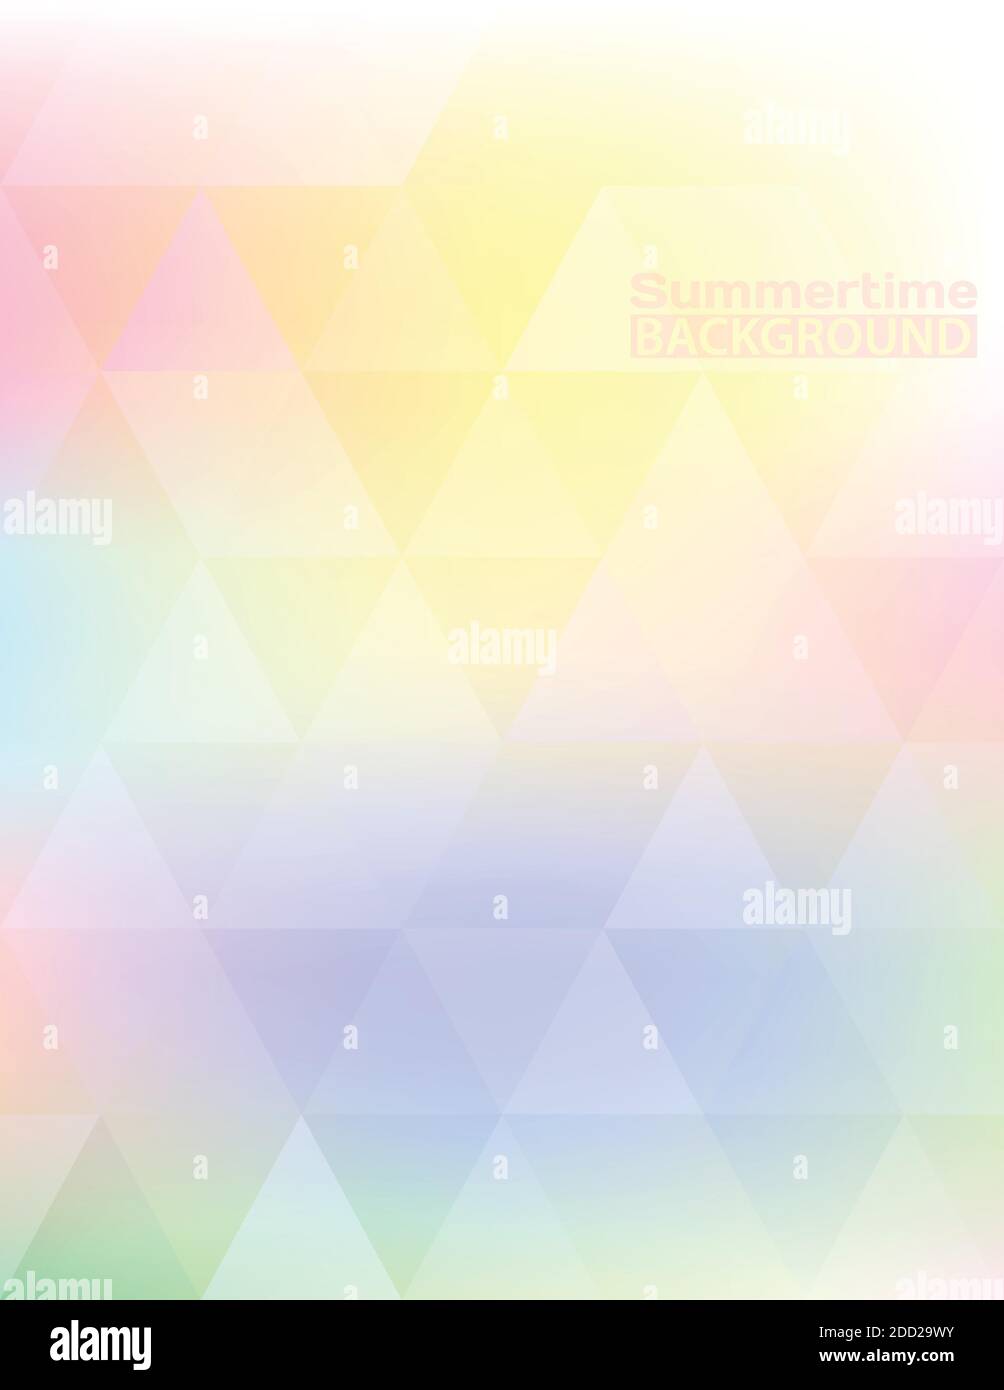 Sommerzeithintergrund. Abstrakt weiche Farbe verschwommen hellen Hintergrund mit Dreiecken. Vertikales Vektorgrafikmuster Stock Vektor